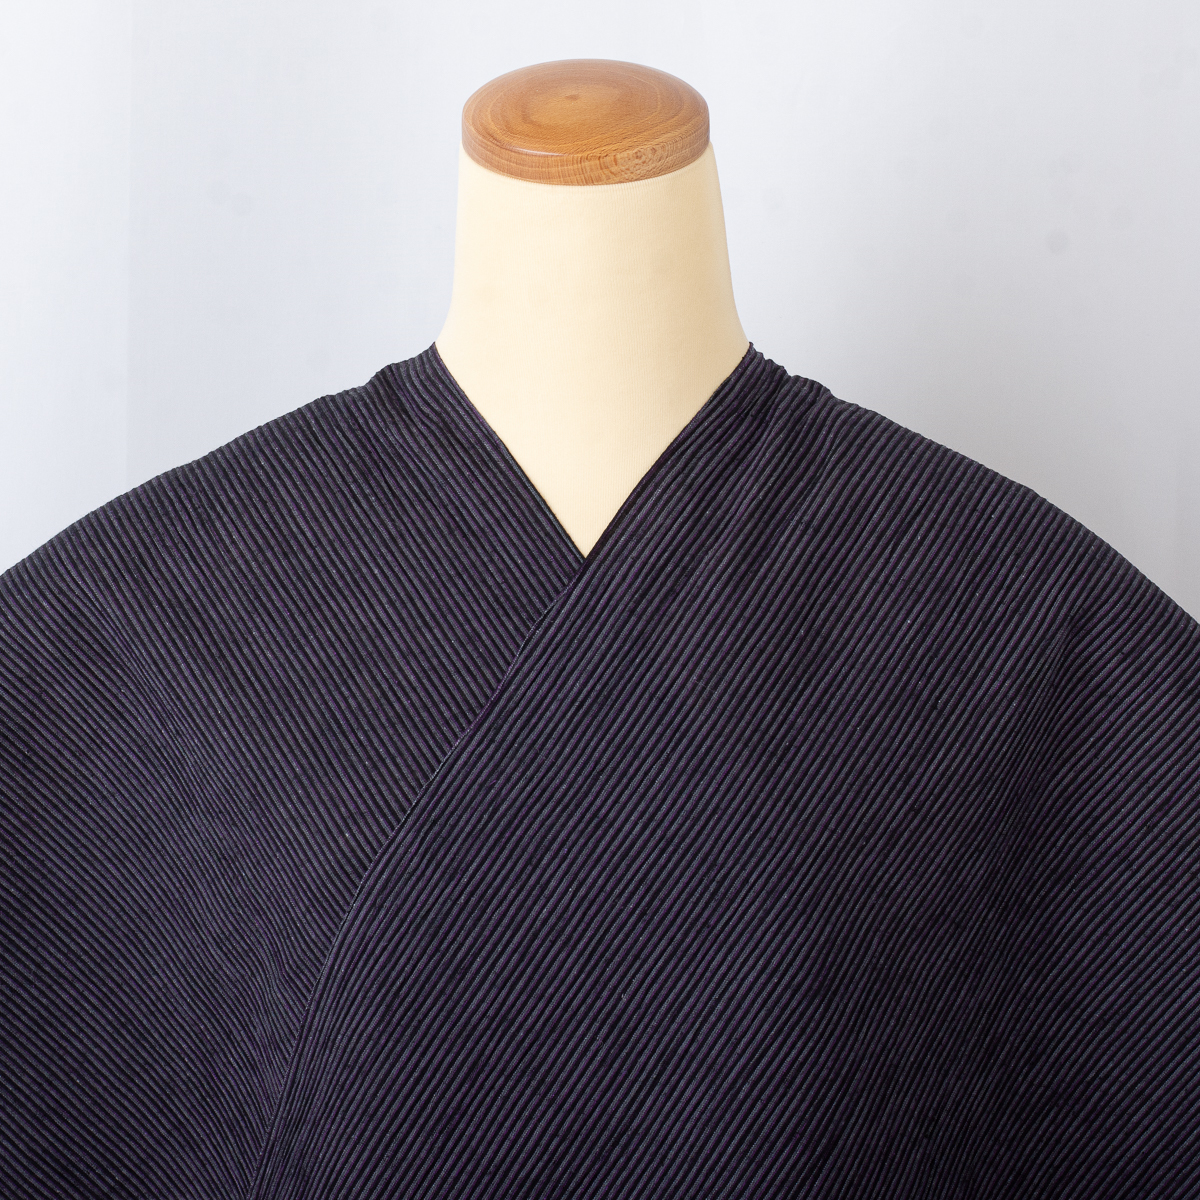 【近江ちぢみ 反物】川口織物謹製 新品 no.3503 綿麻の着物 夏の着物_画像10